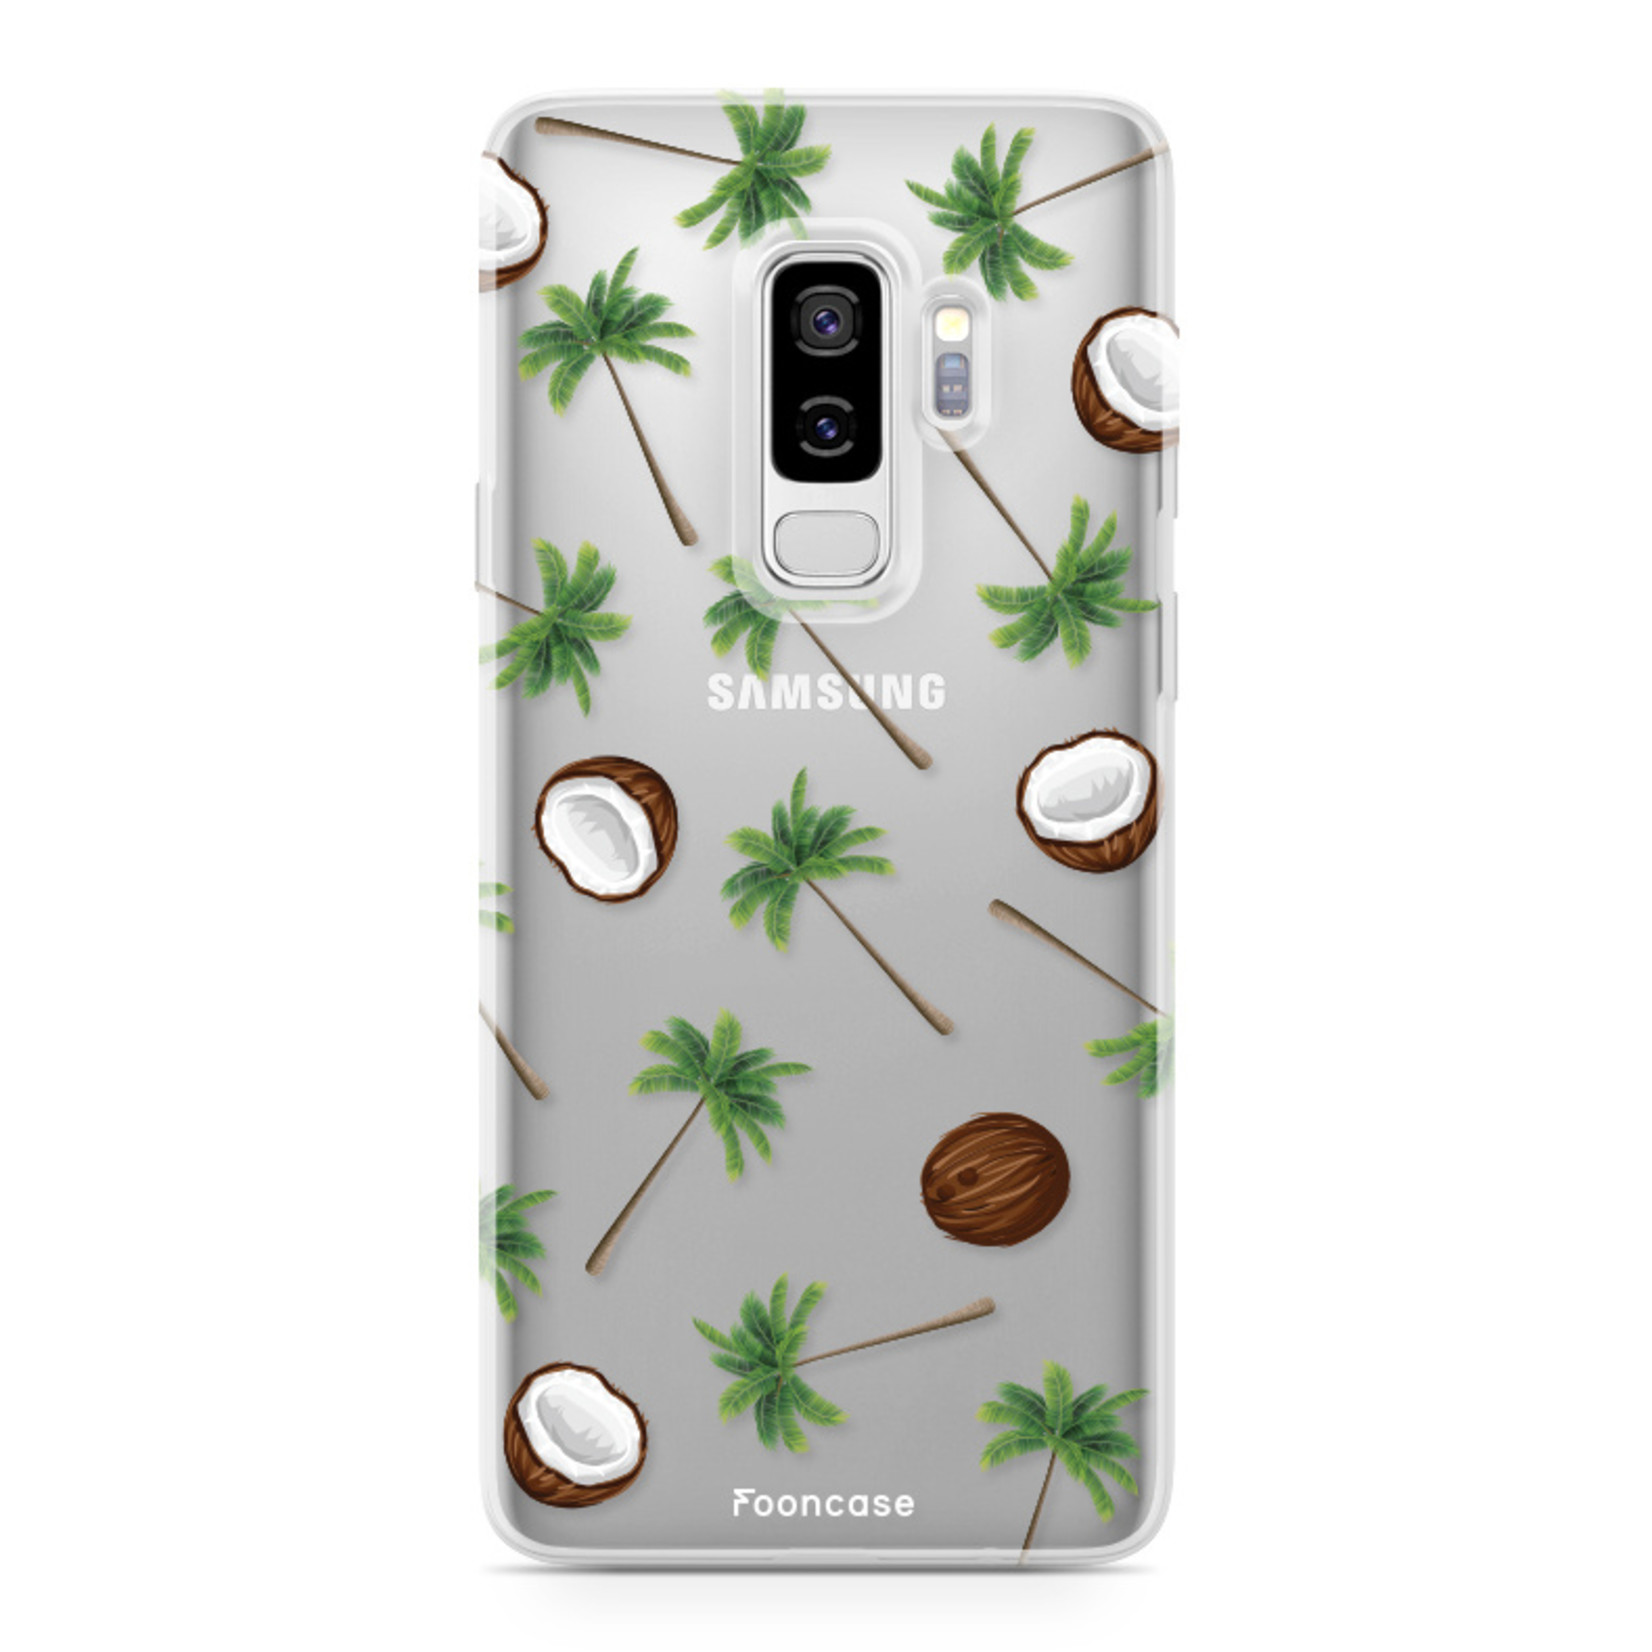 FOONCASE Samsung Galaxy S9 Plus Case - Coco Paradise